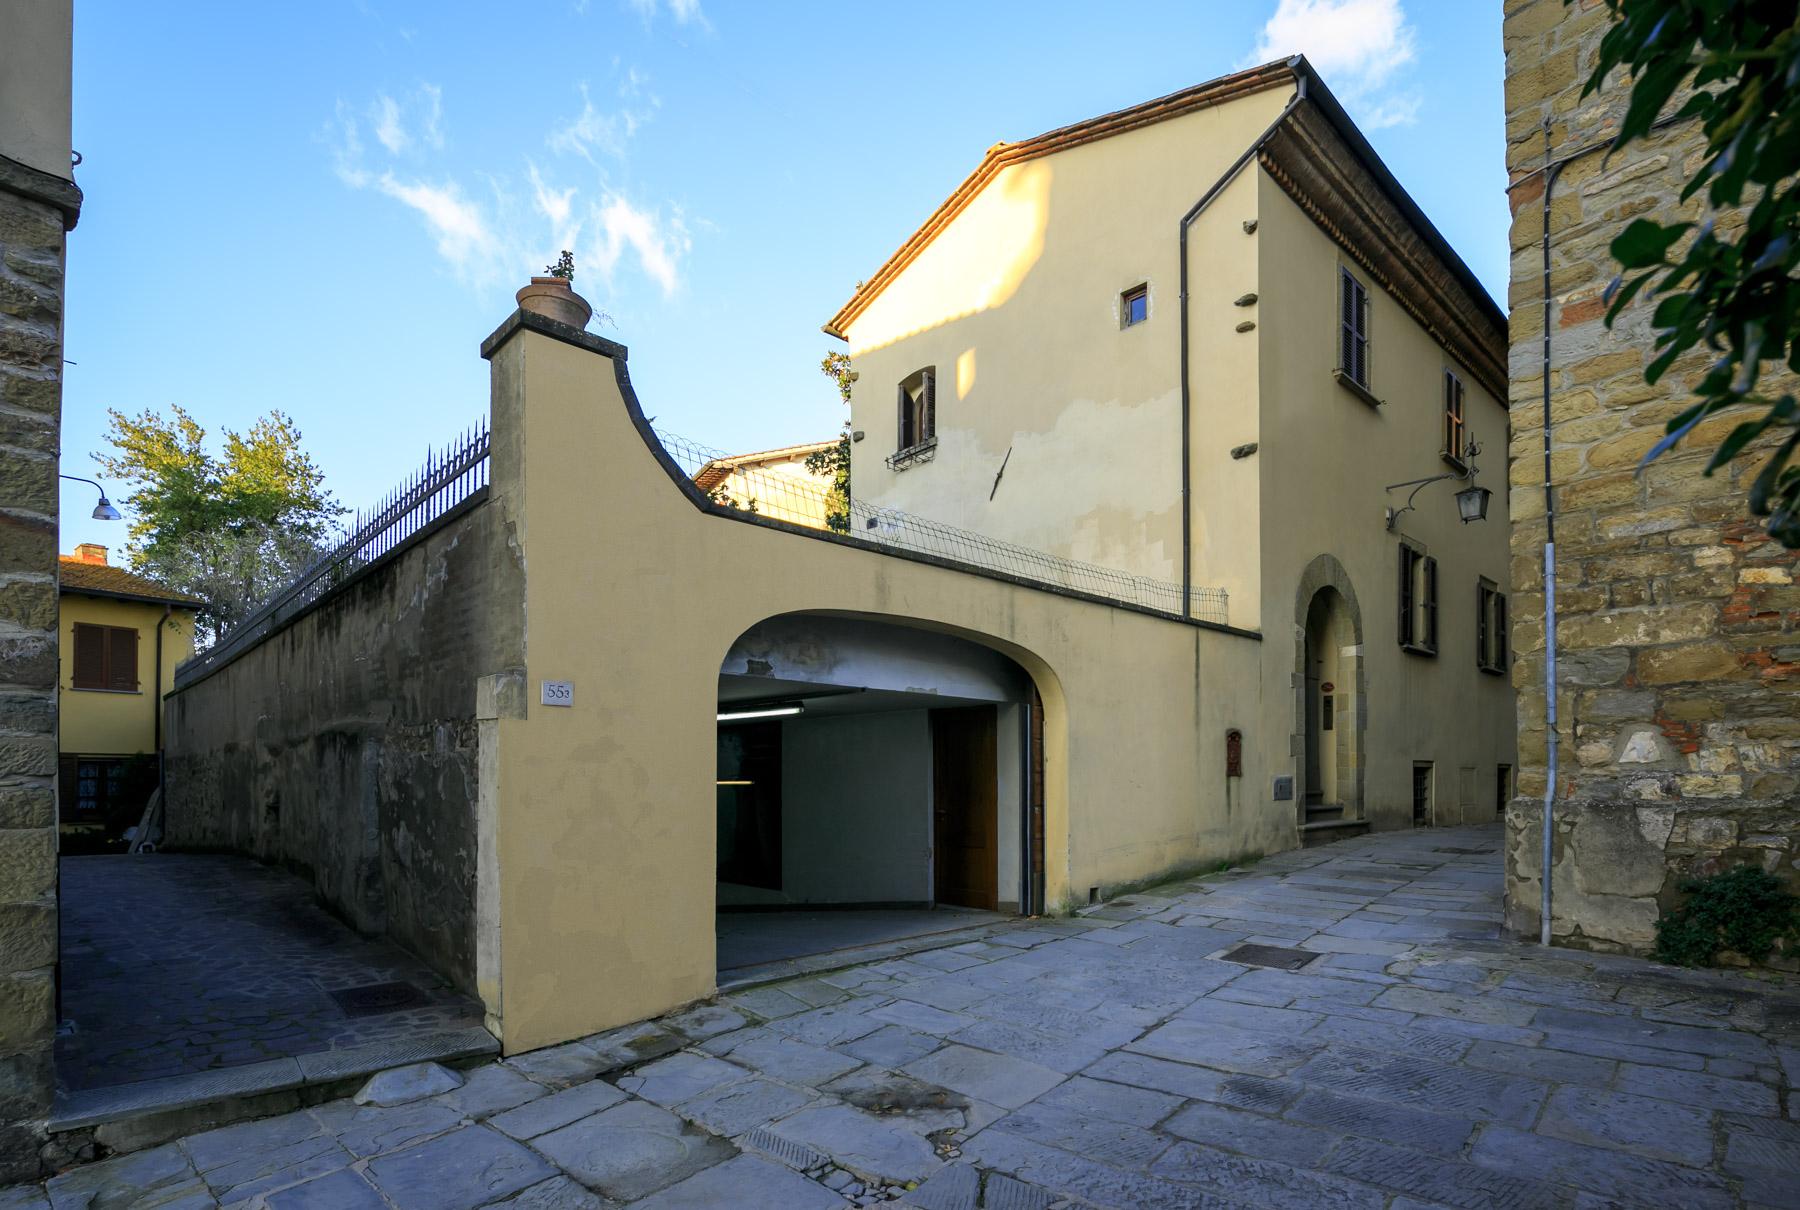 Palazzo Rinascimentale in Vendita a pochi passi da Piazza Grande, Arezzo - 25